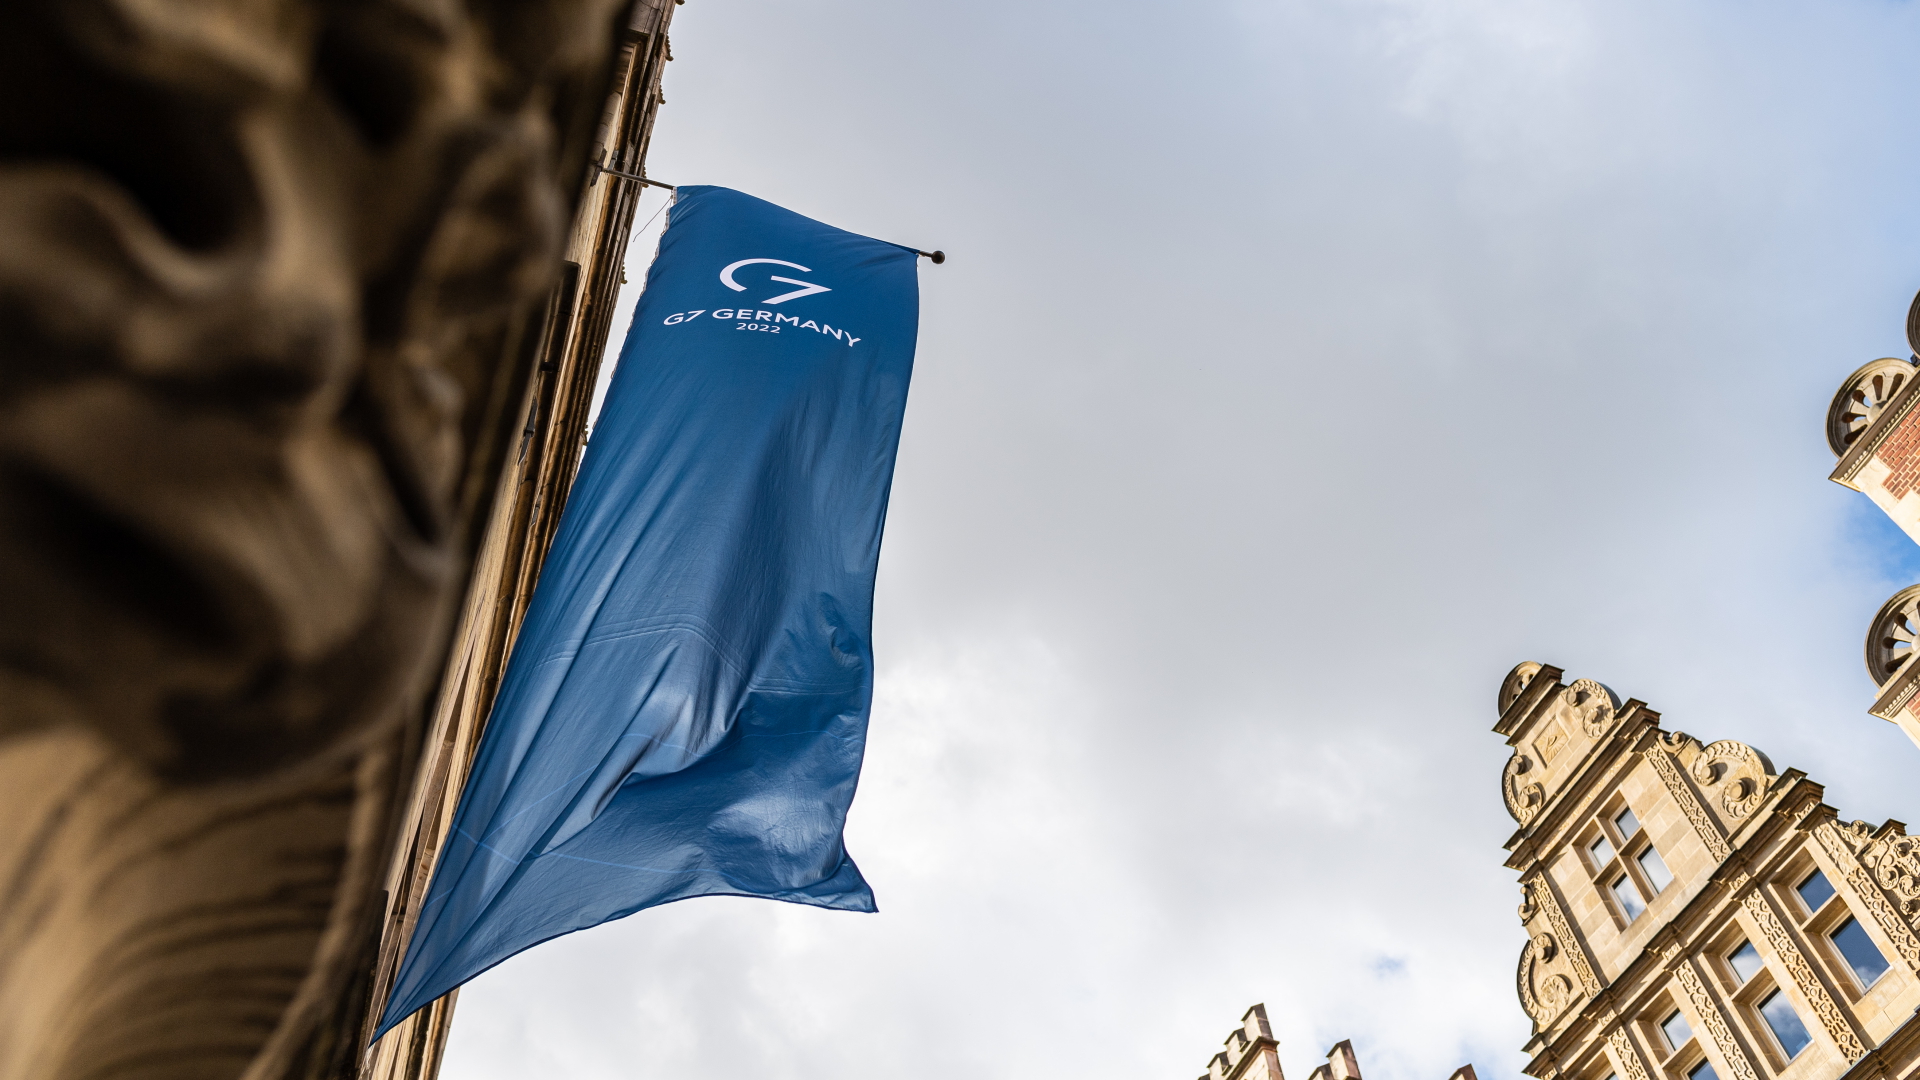 An der Fassade des Historischen Rathauses in Münster, wo sich die Teilnehmer der G7 treffen, weht eine G7 Fahne.